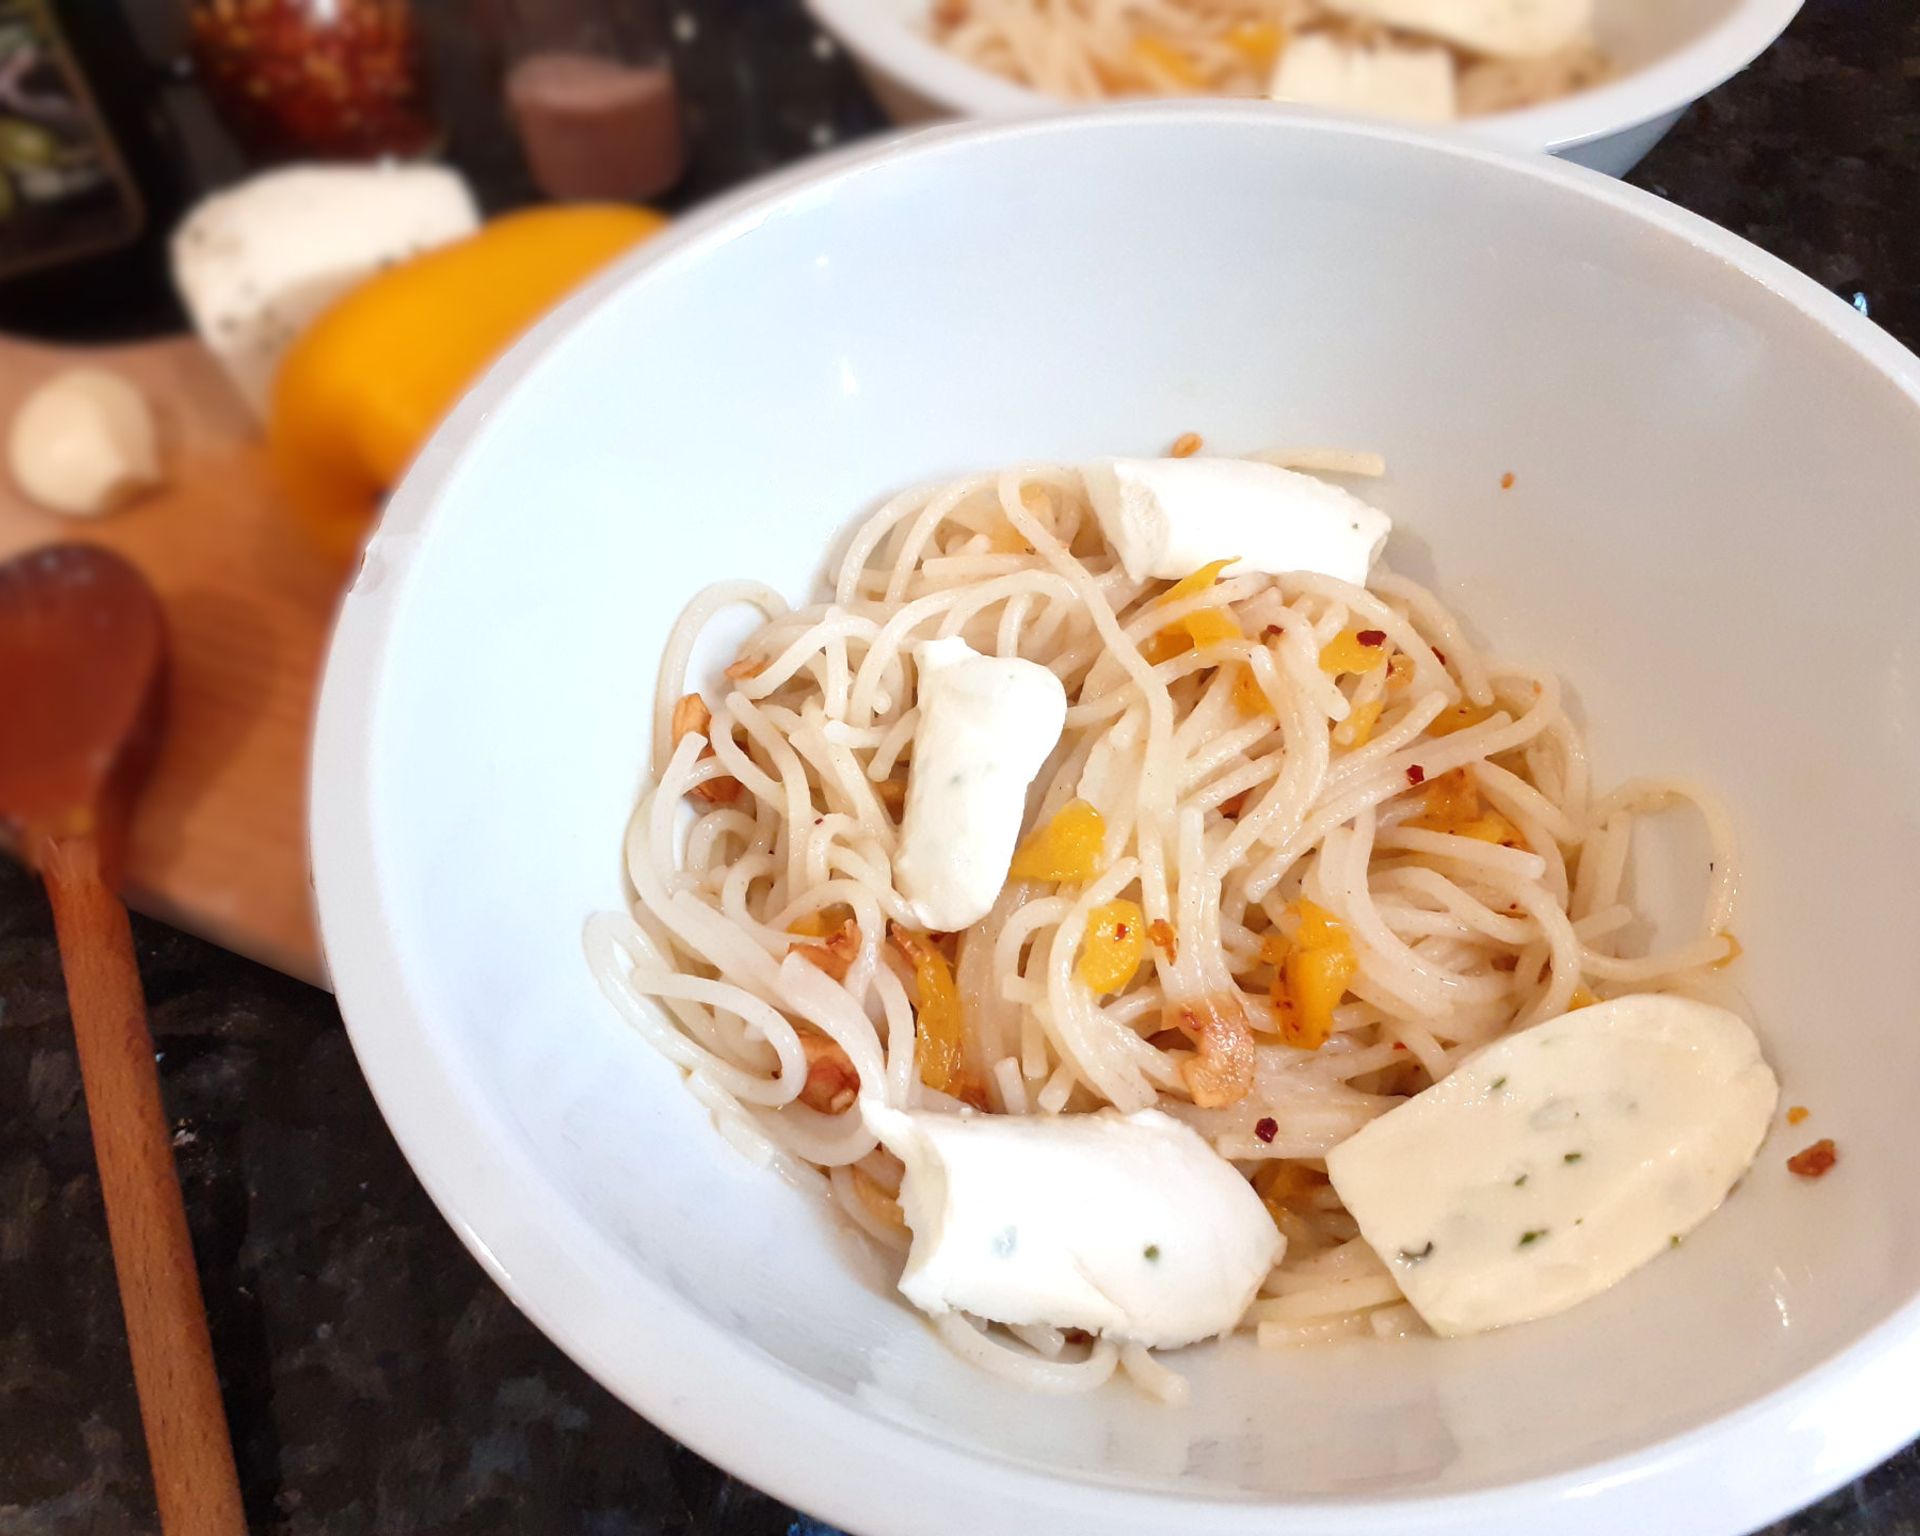 Uvarené cestoviny špagety s praženou paprikou na olivovom oleji. Ako príloha sa podáva syr mozzarella.